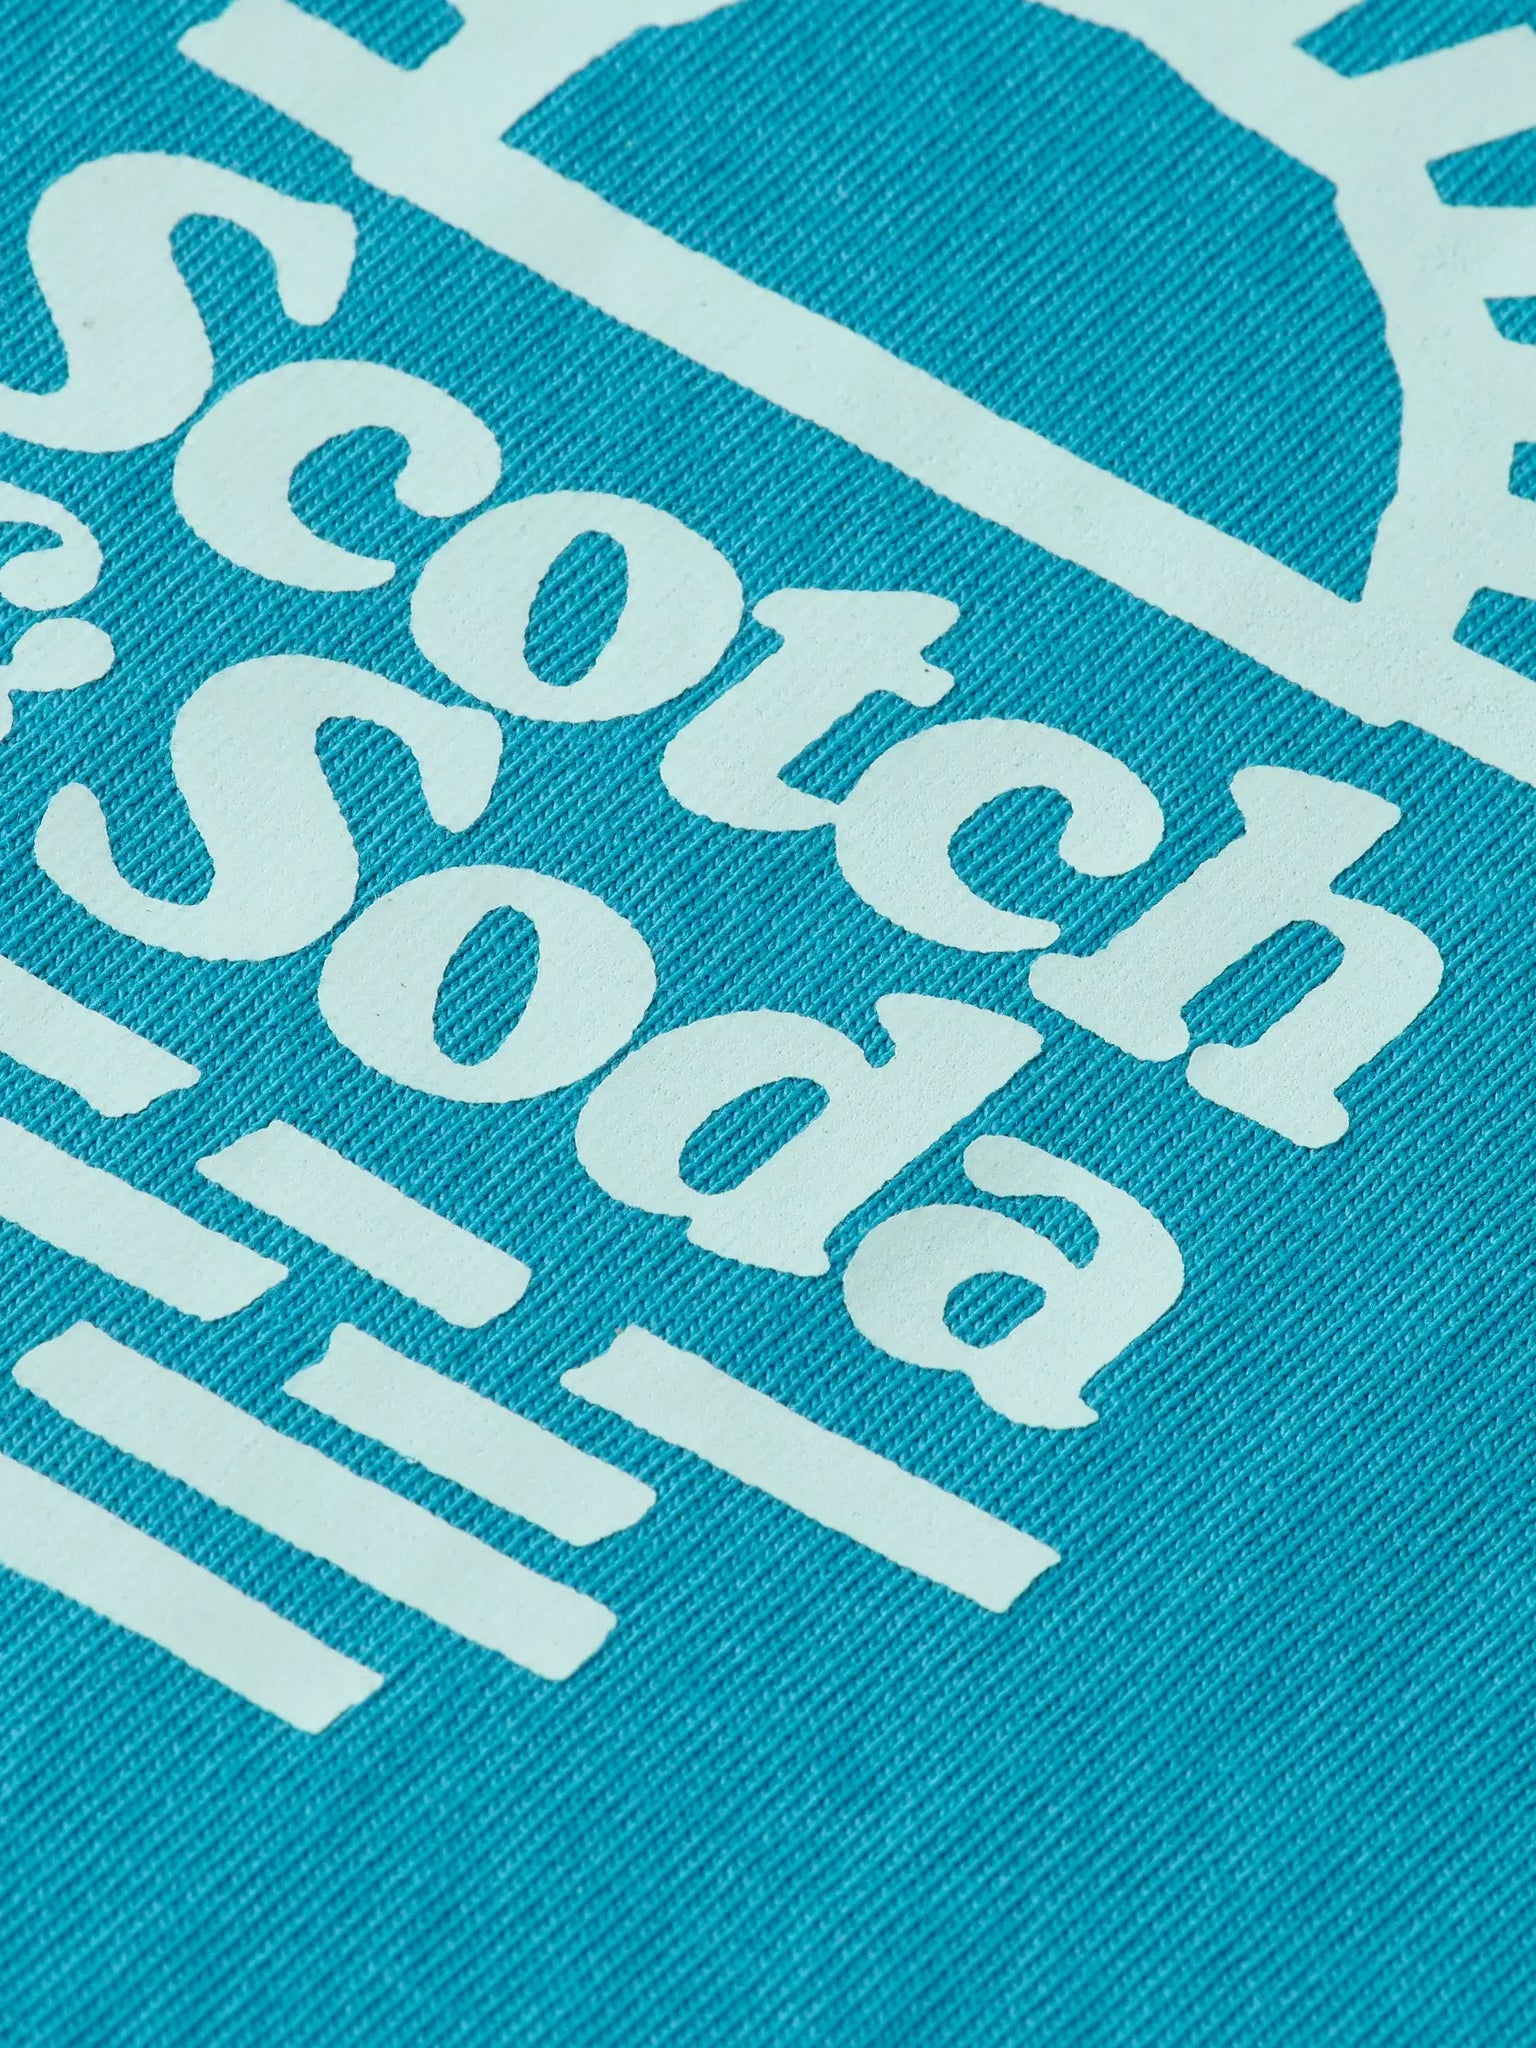 Camiseta Scotch & Soda Left Chest Artwork Petrol Blue